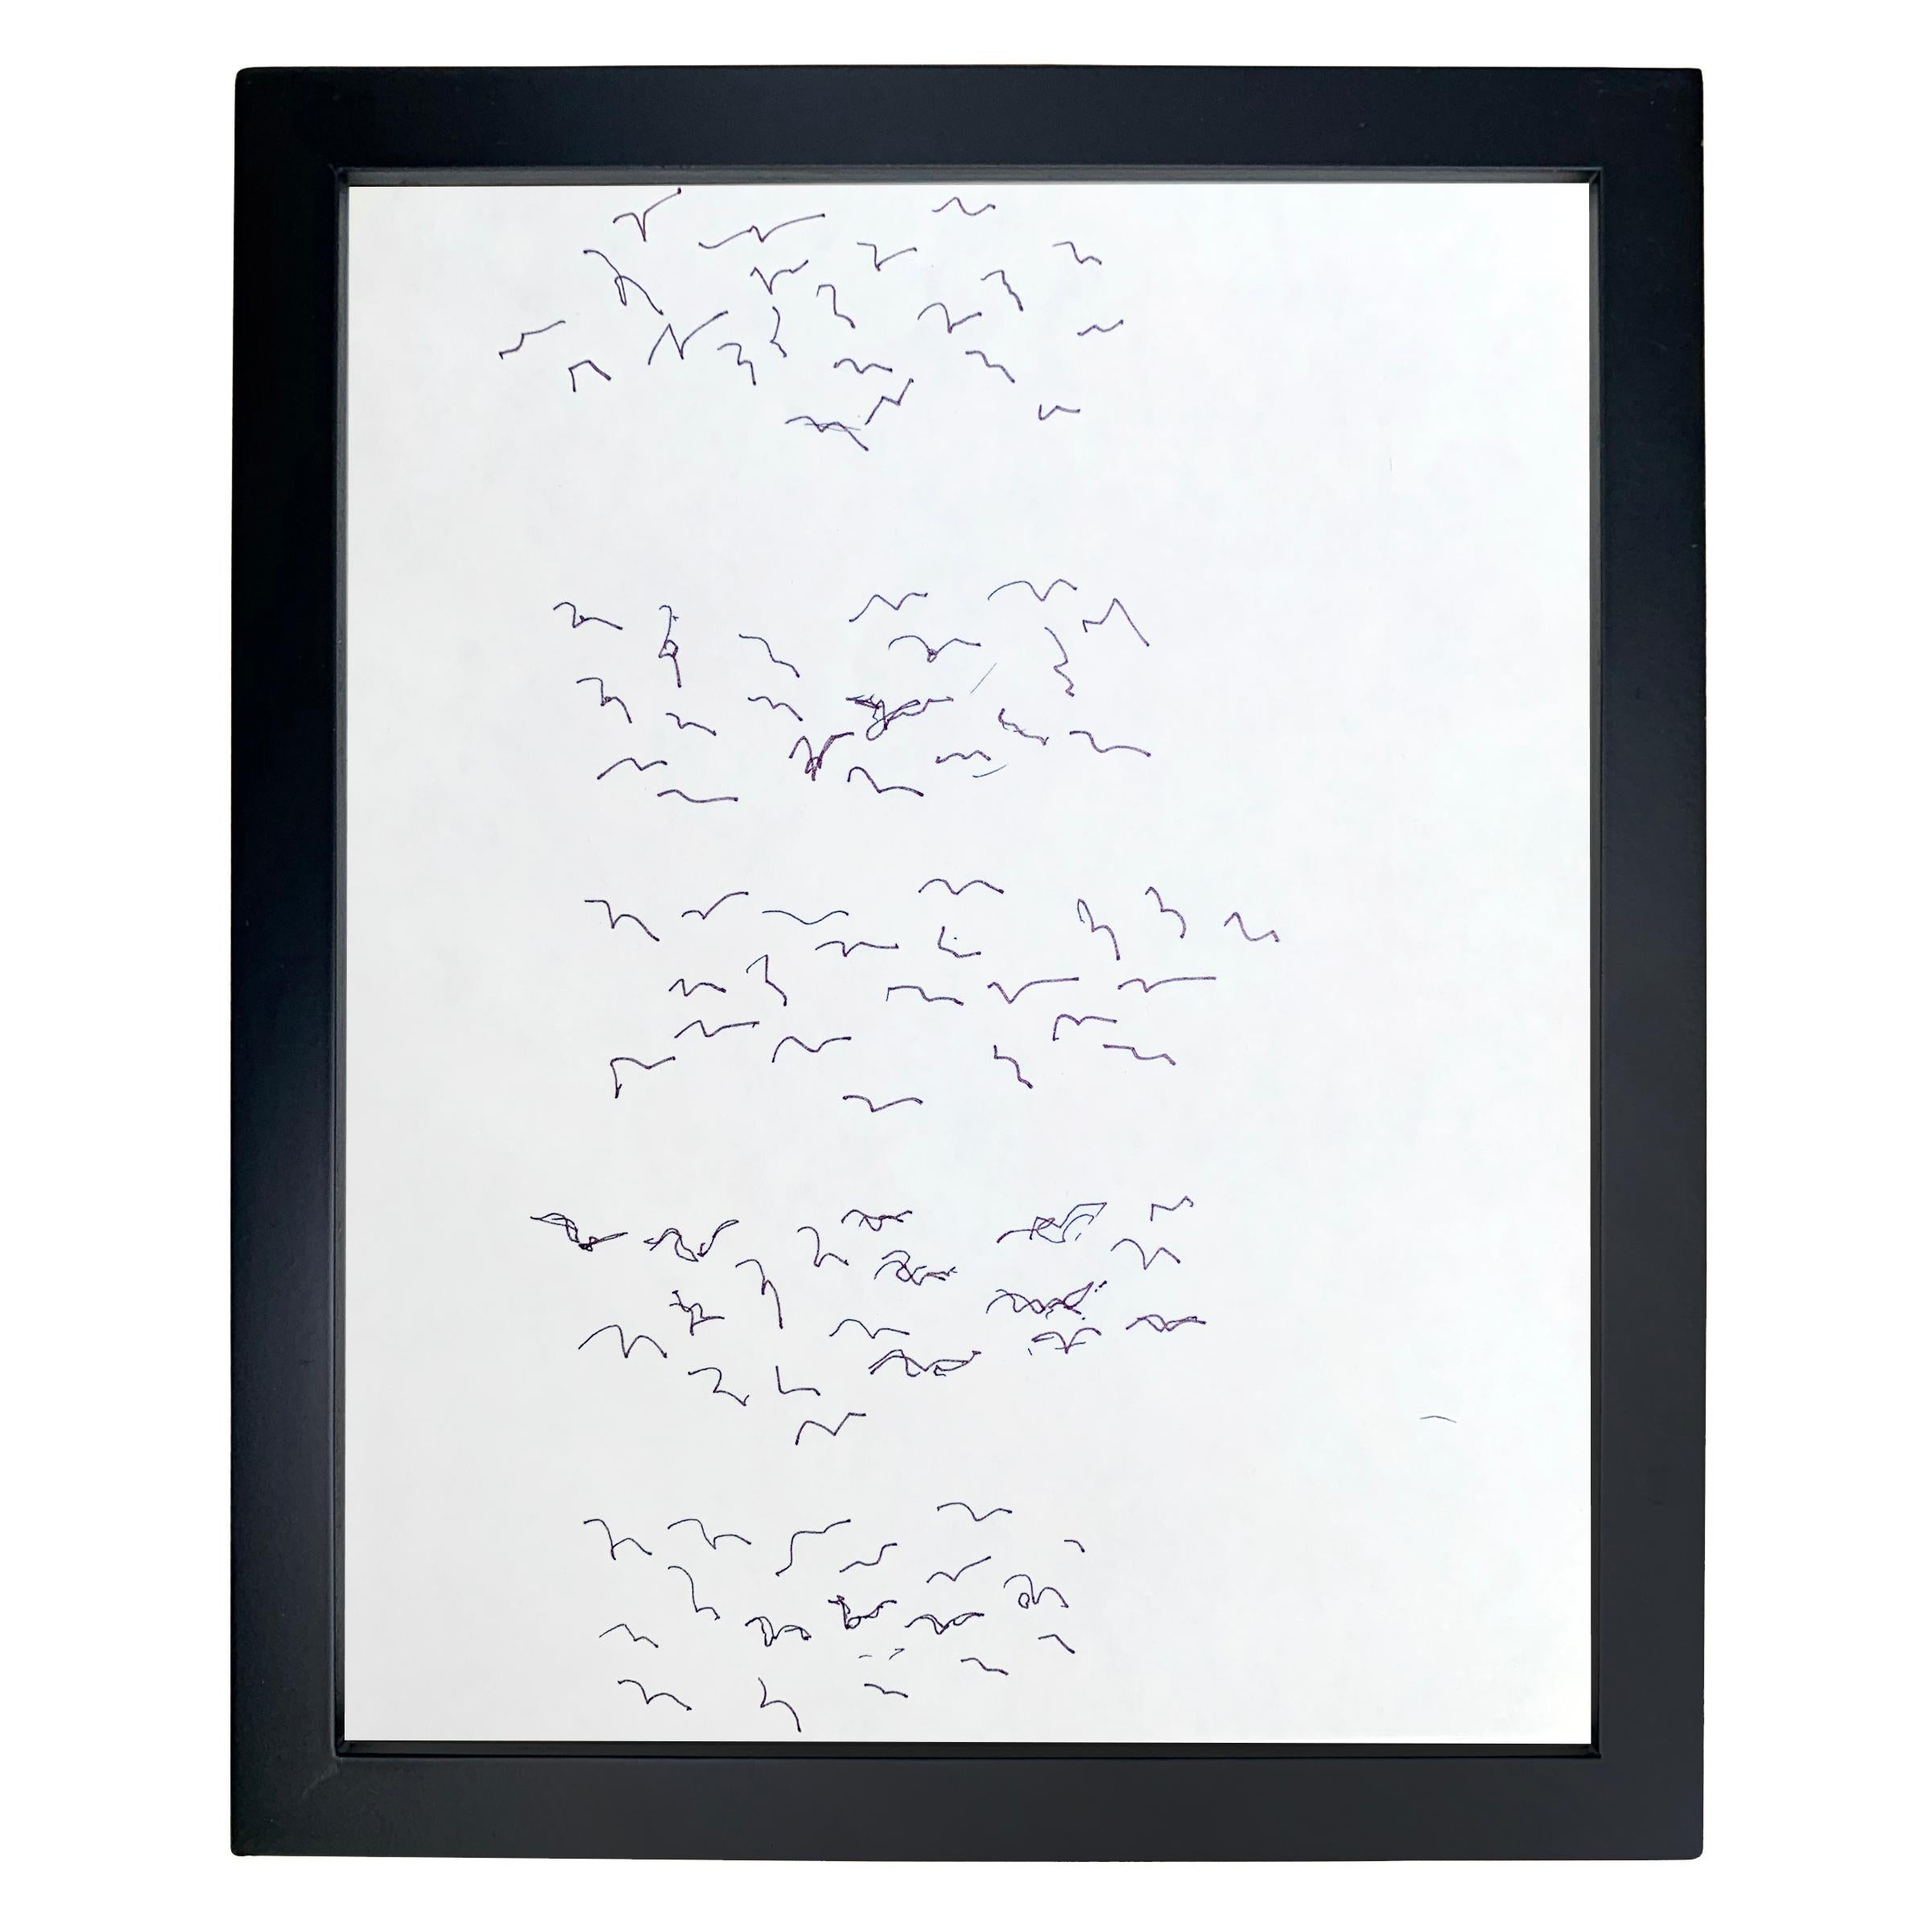 Ein Satz von drei gerahmten gestischen Zeichnungen von Paul Chidlaw (1900-1989), die Vogelschwärme in schwarzer Tinte auf Papier darstellen. 

Paul Chidlaw war ein früher Vertreter des abstrakten Expressionismus und hatte eine lange und bedeutende